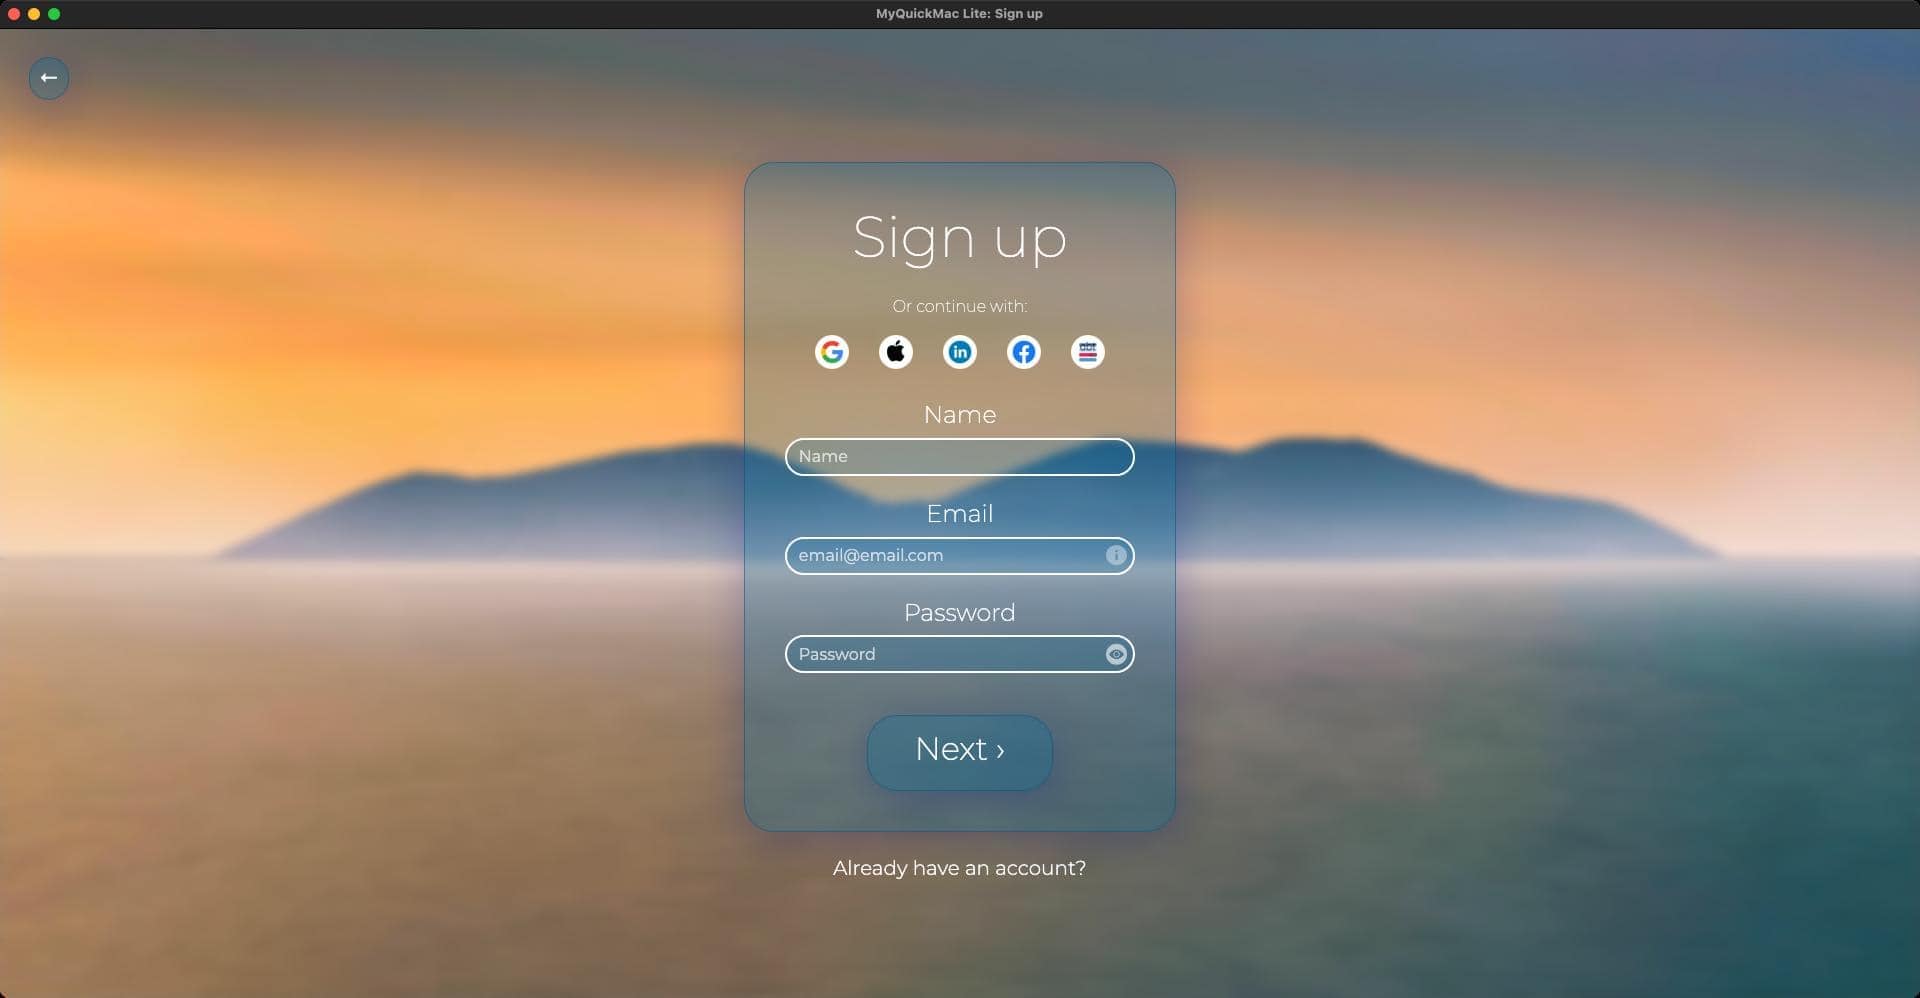 Screenshot of 'Sign up' window of MyQuickMac Lite